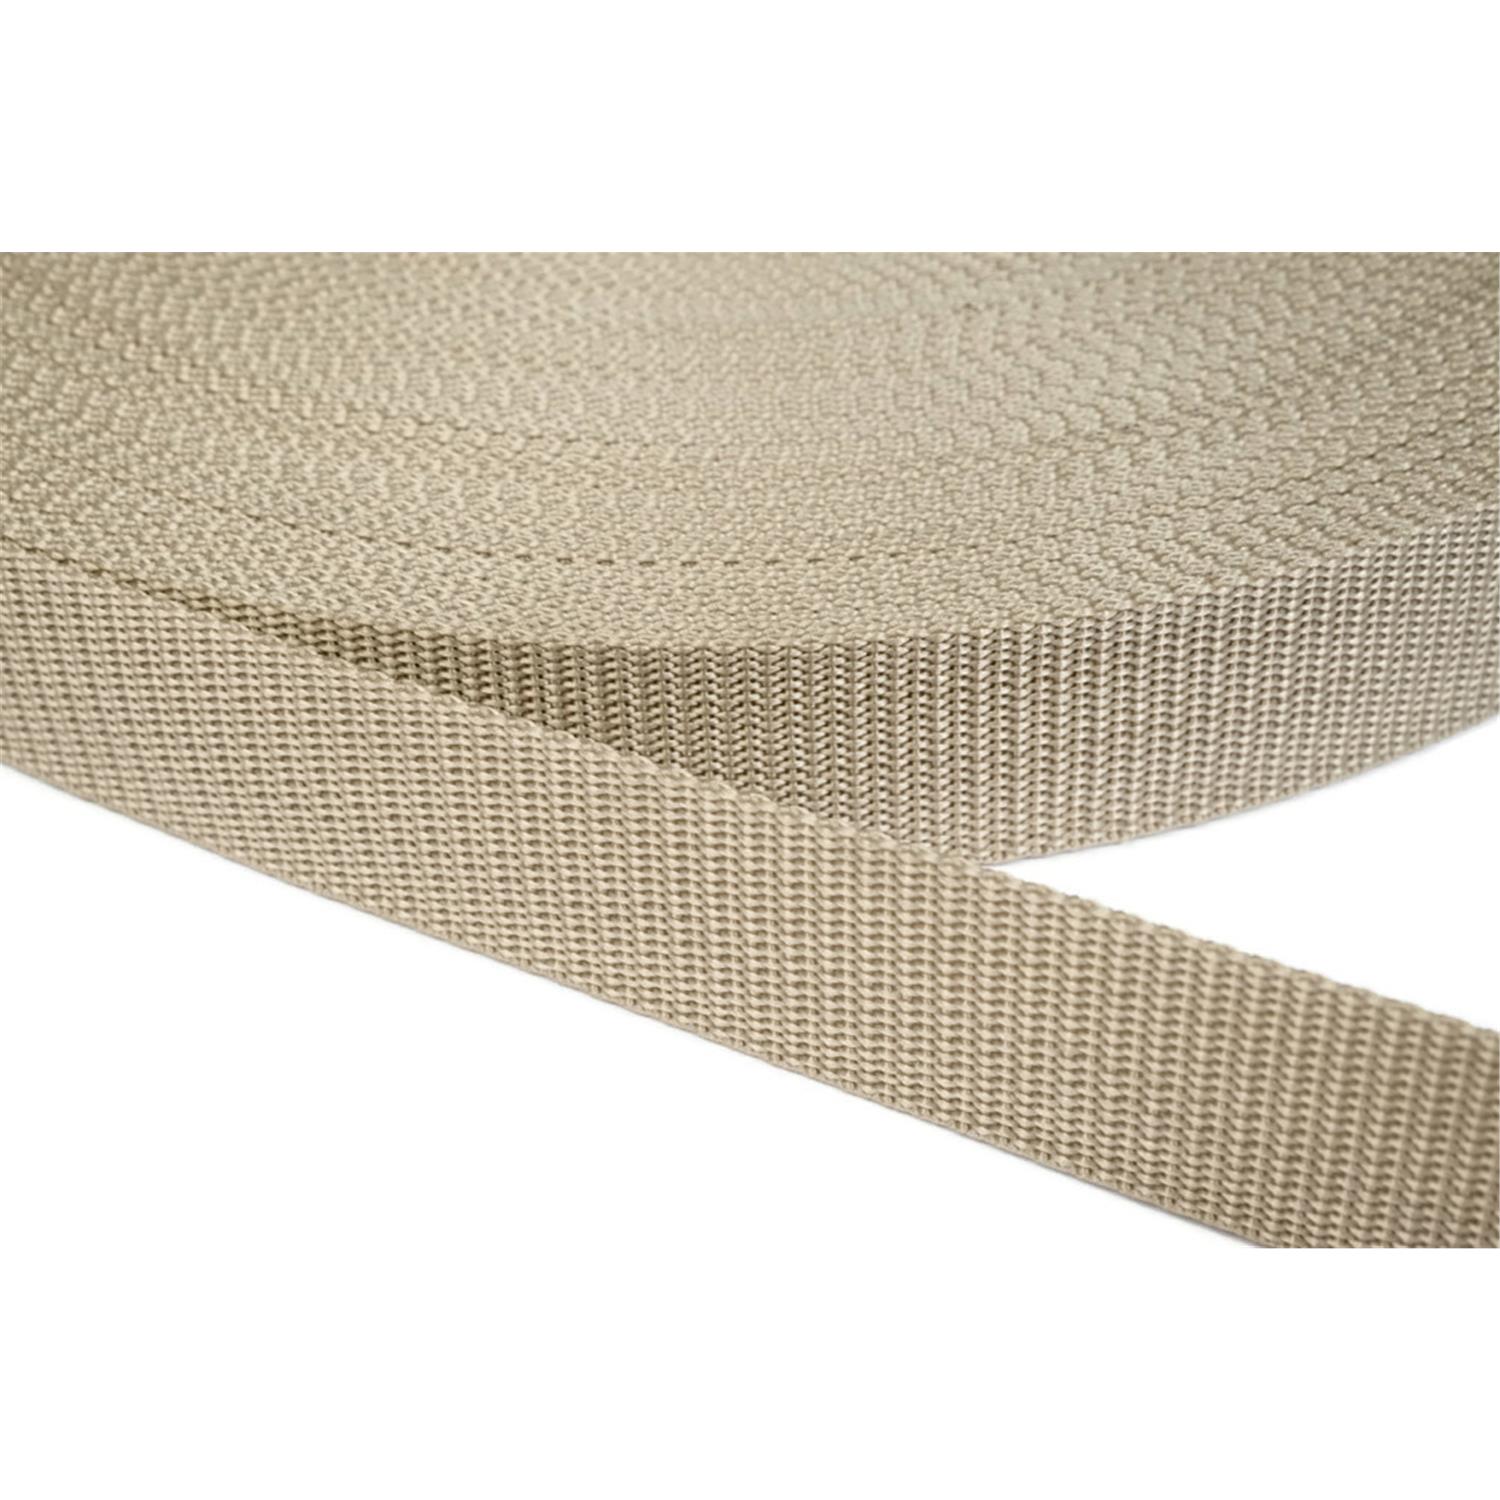 Gurtband 20mm breit aus Polypropylen in 41 Farben 03 - beige 12 Meter